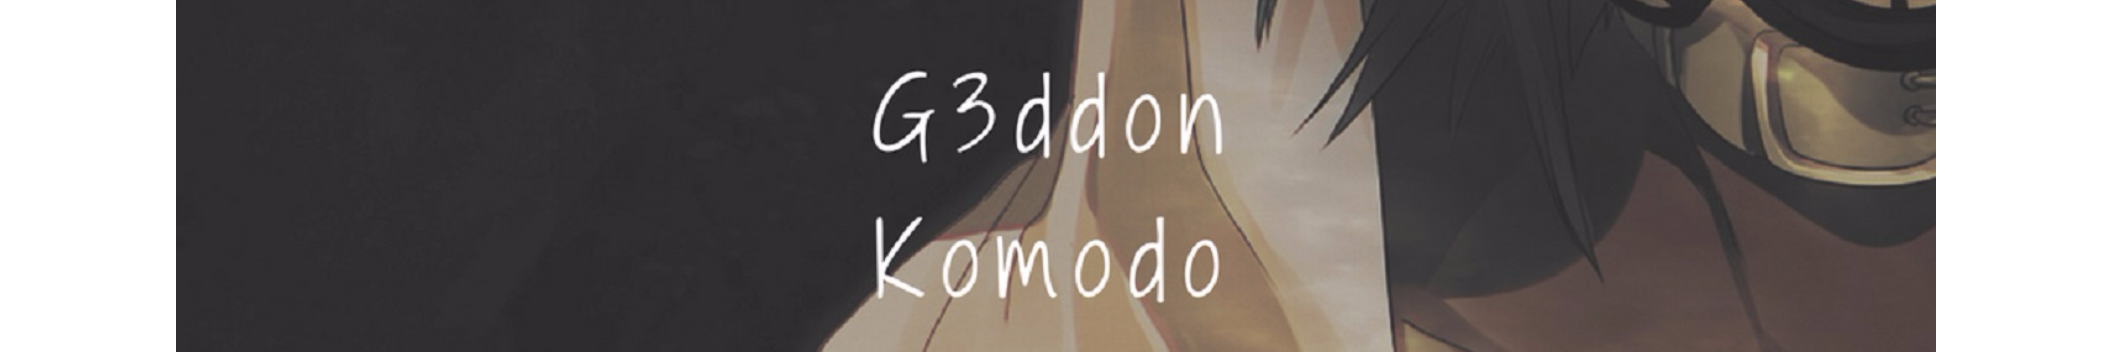 G3ddon Komodo